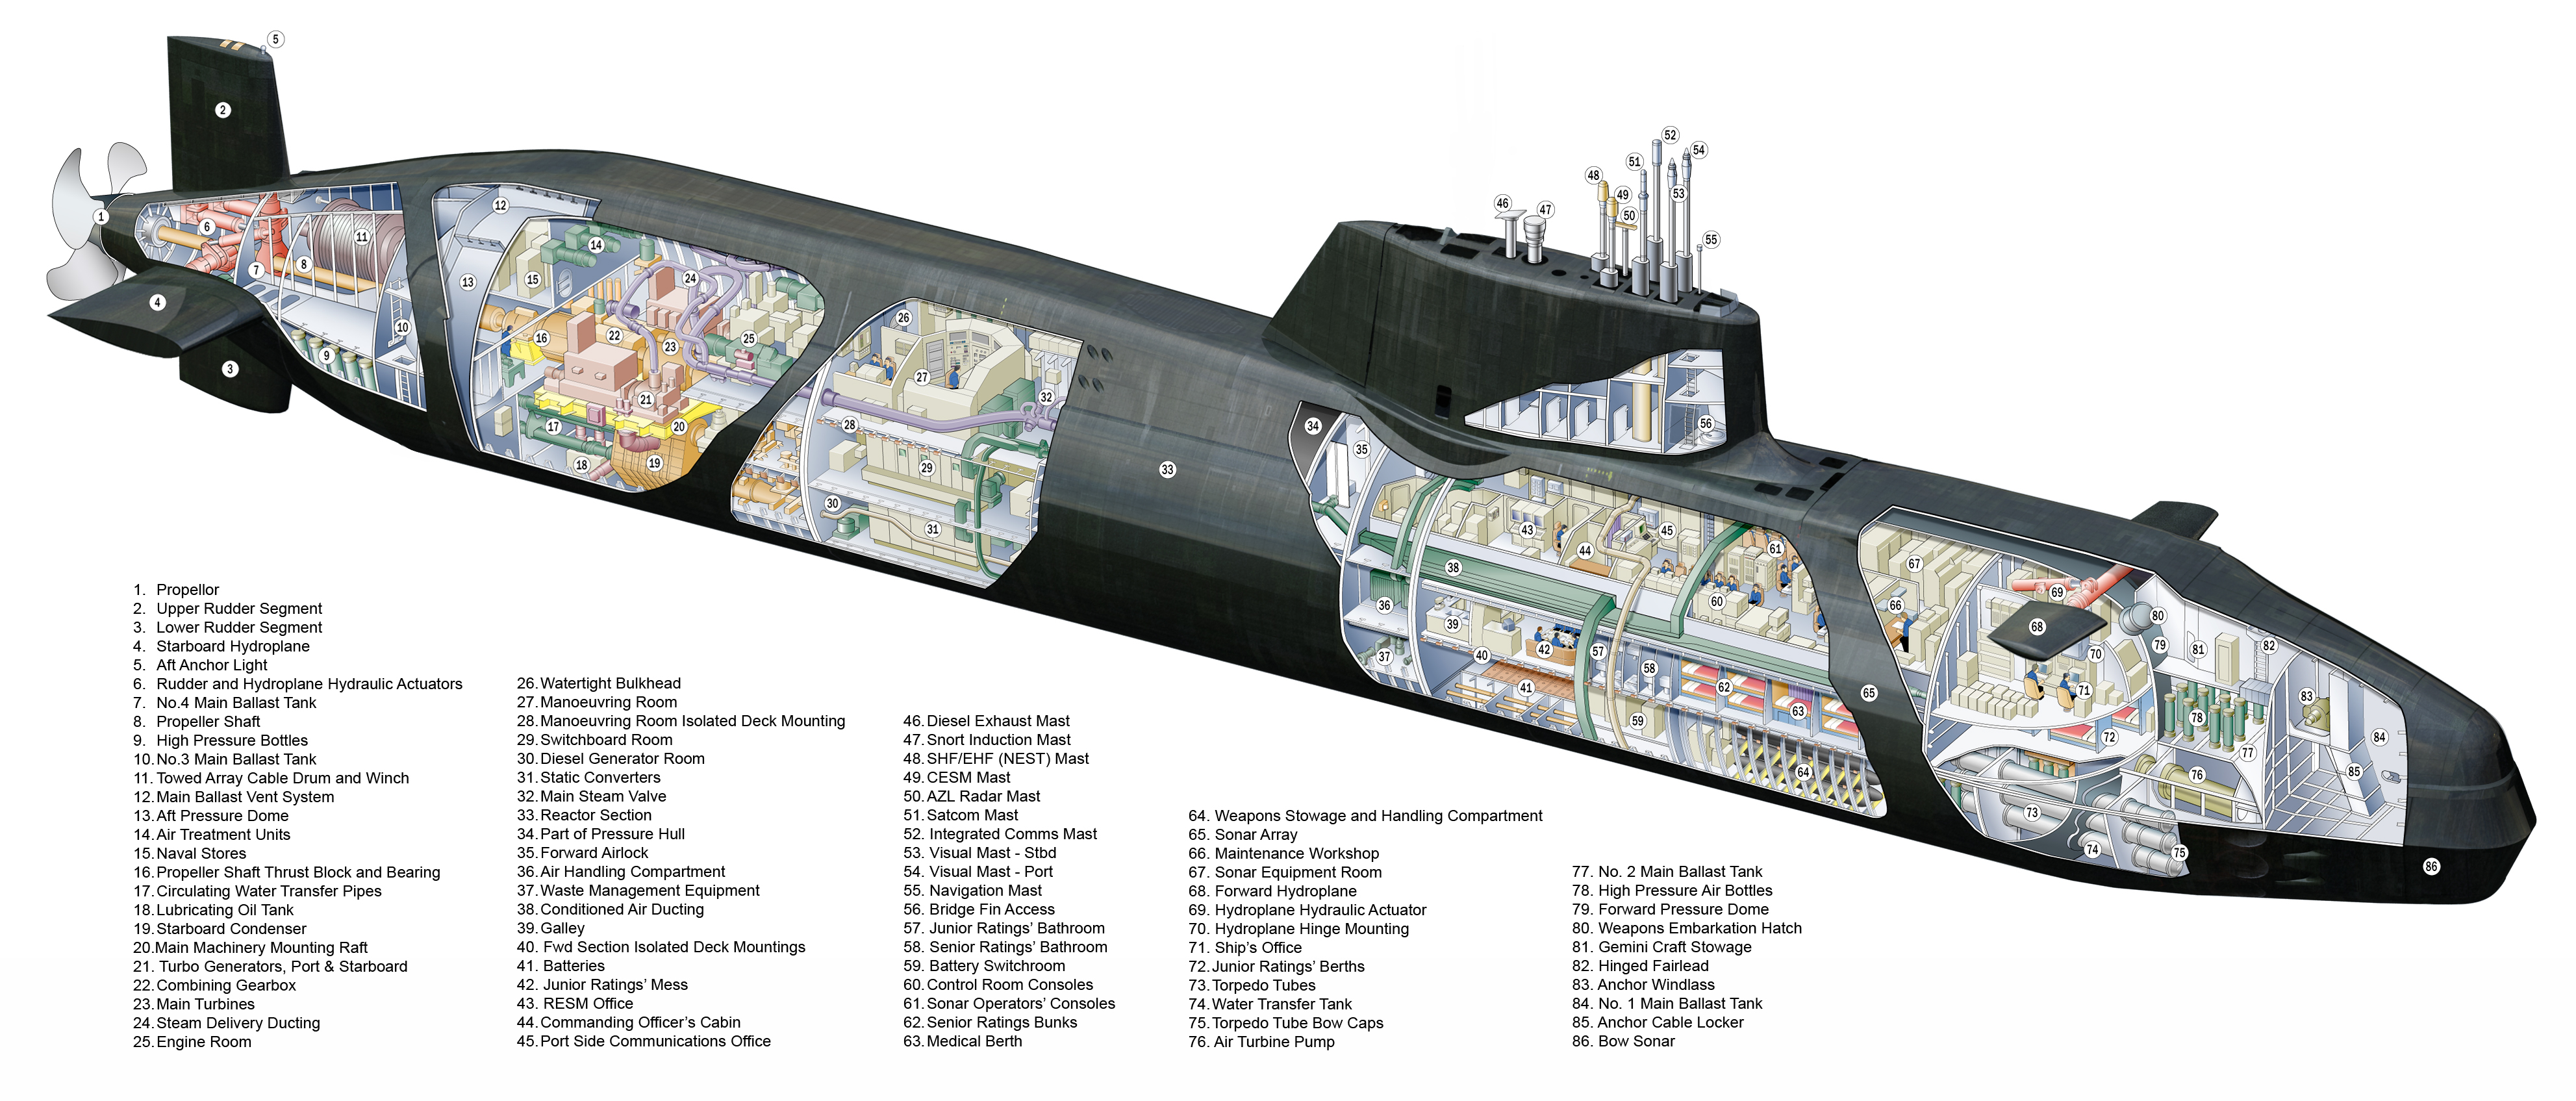 подводная лодка, чертежи - обои на рабочий стол